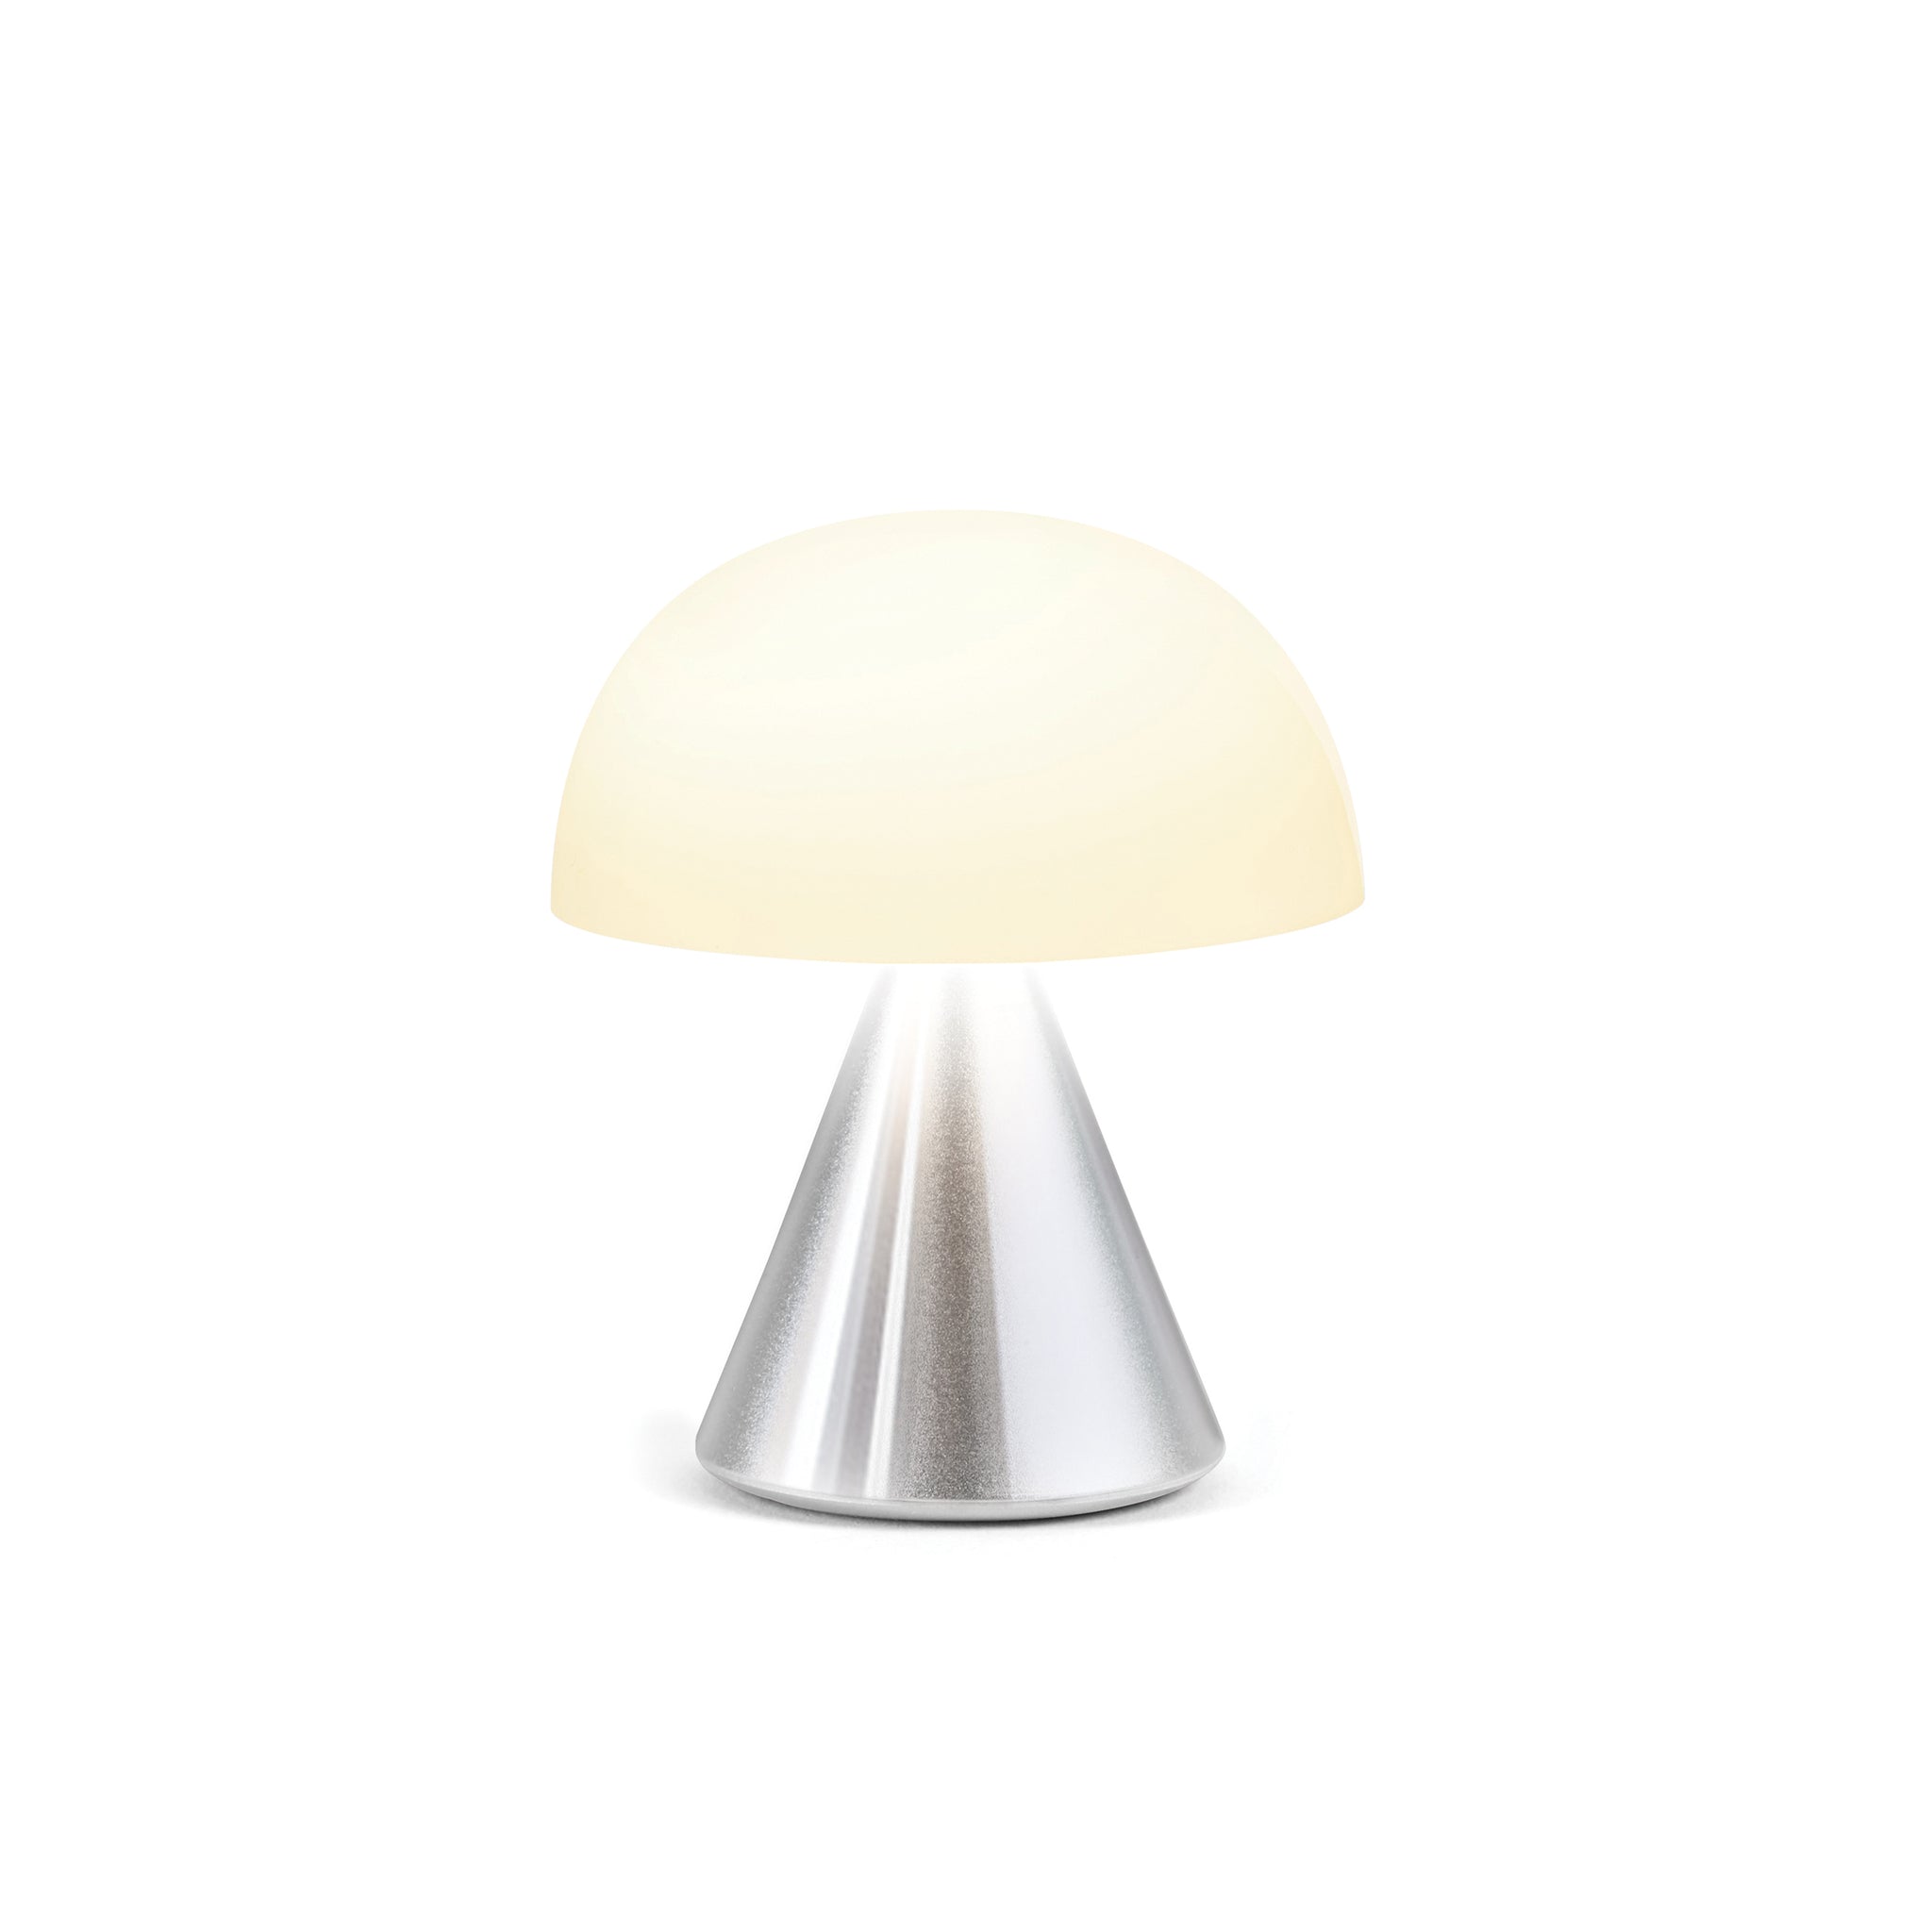 Lexon Mina Small Aluminium│Oplaadbare LED-Lamp│art. LH60MAP│vooraanzicht met warm licht aan